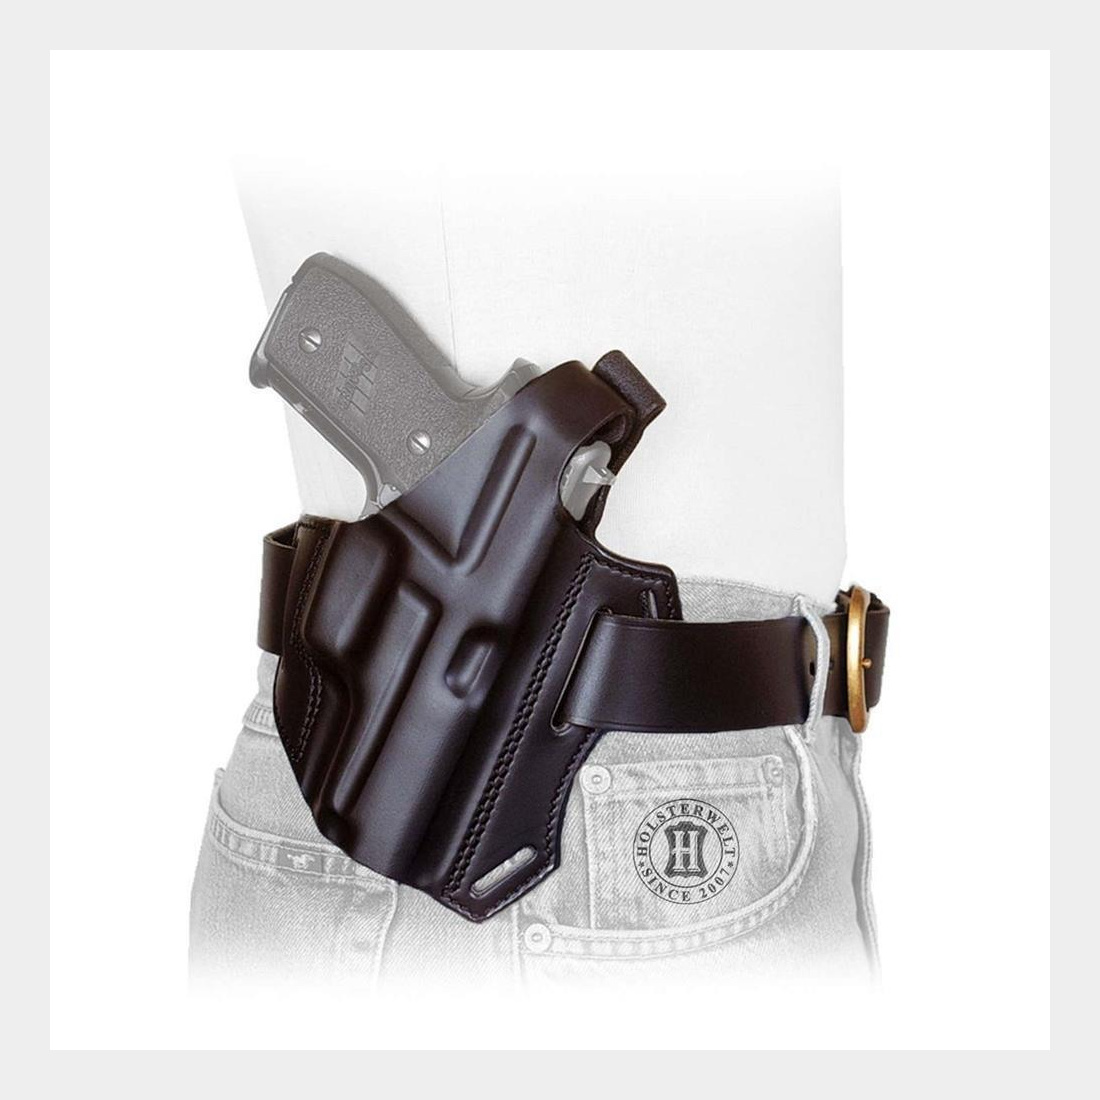 Gürtelholster / Schulterholster MULTI VARIO Glock 19/23,17/22,34/35, S&W 4506,1006,5904/06,-Schwarz-Linkshänder